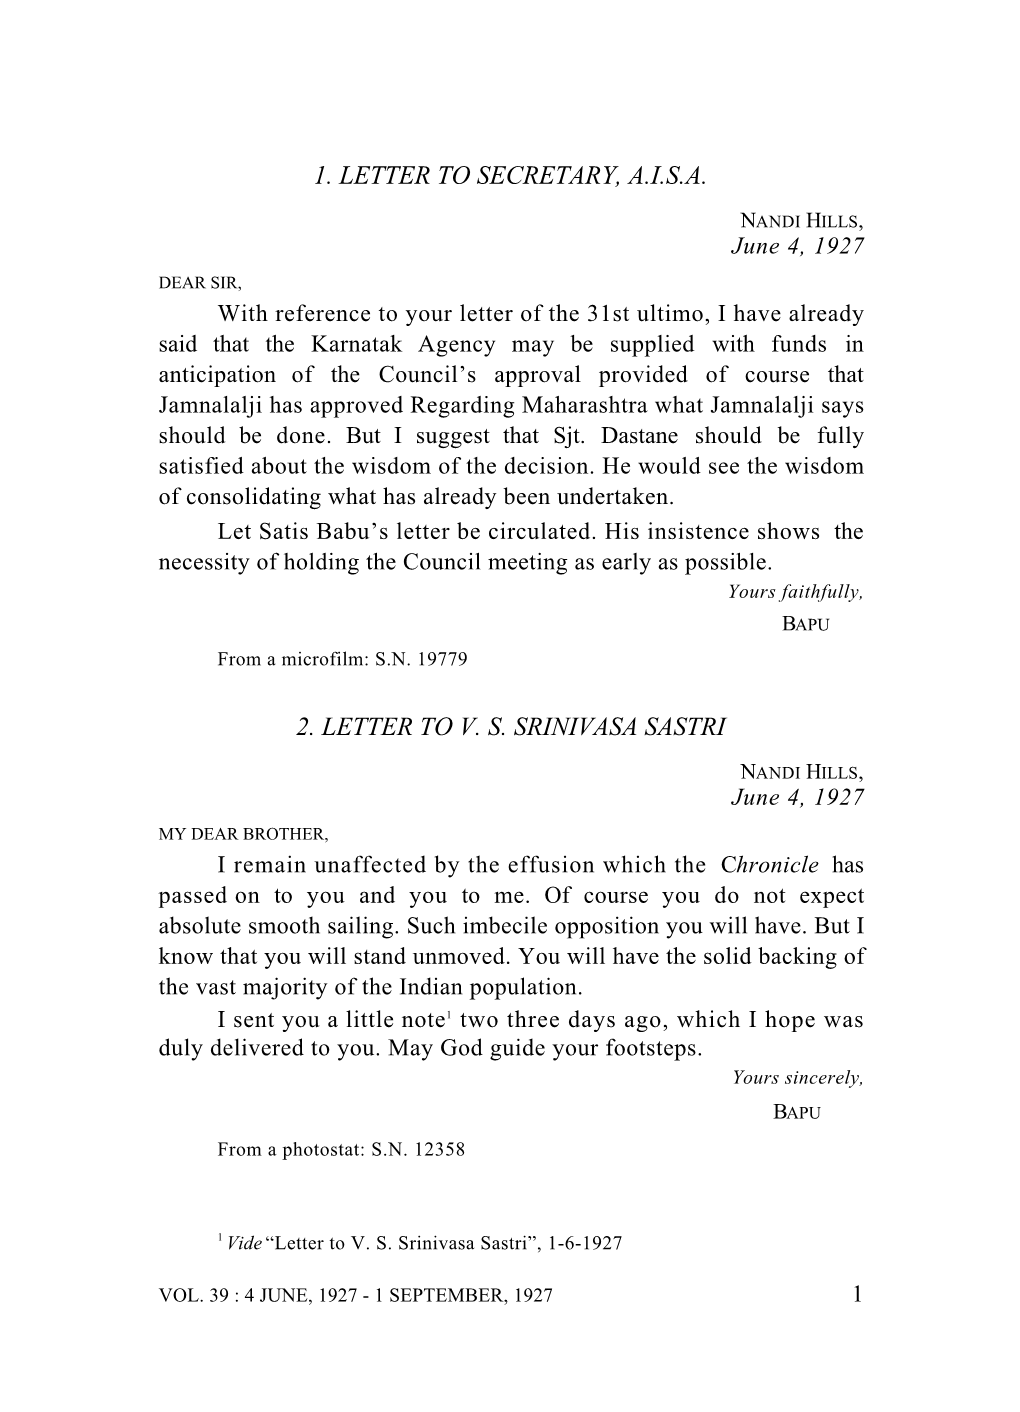 1. Letter to Secretary, A.I.S.A. 2. Letter to V. S. Srinivasa Sastri